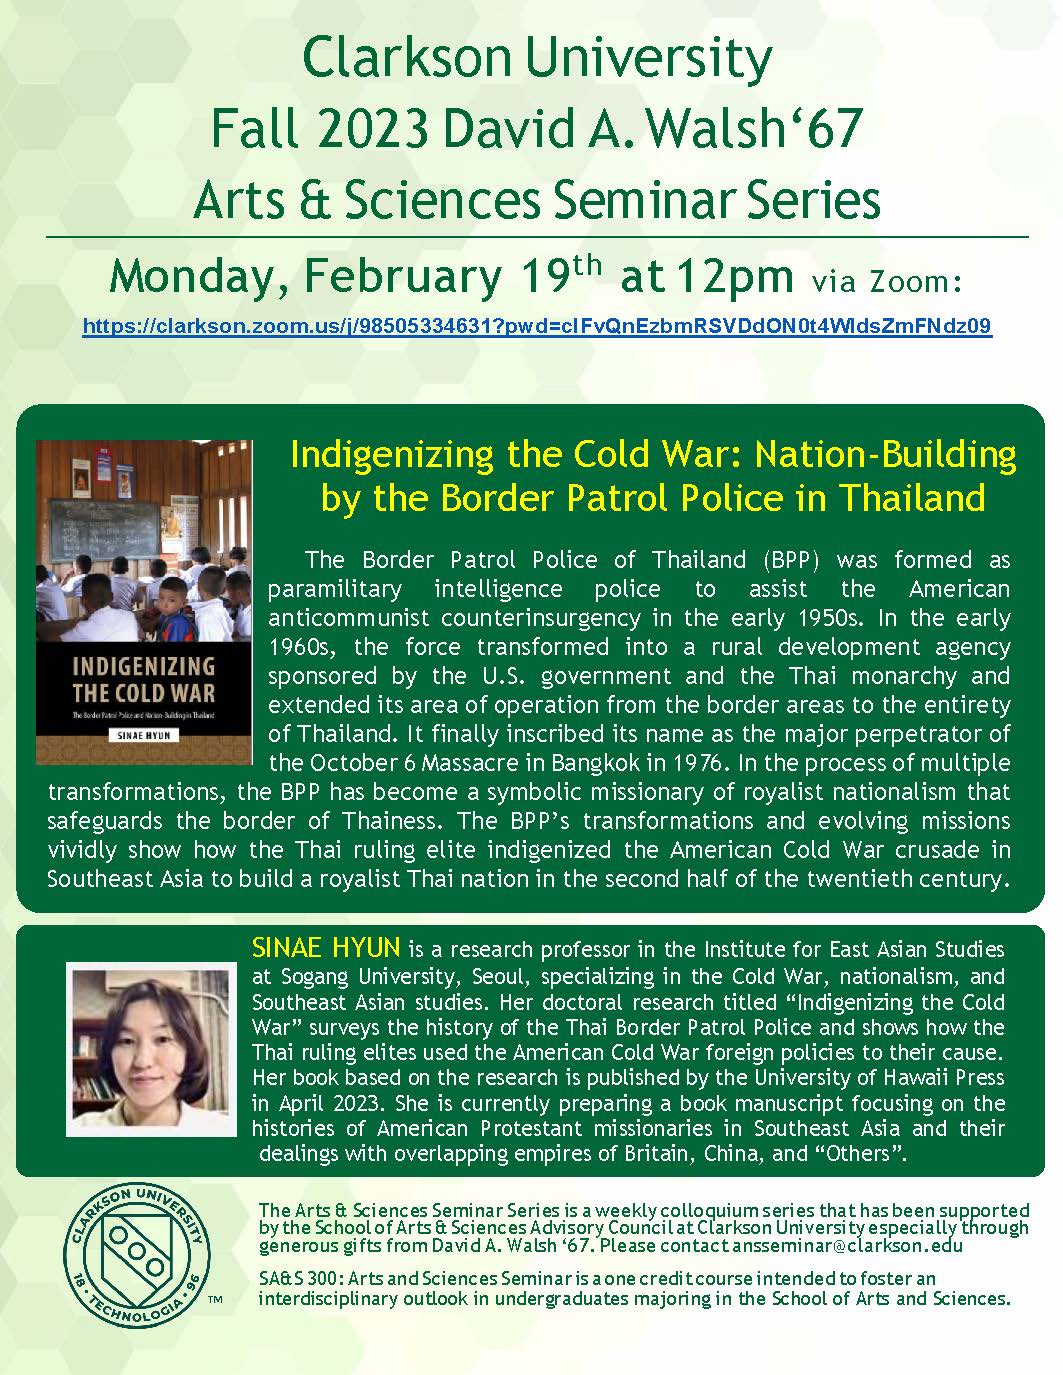 David A. Walsh ‘67 Arts & Sciences Seminar Series: Sinae Hyun